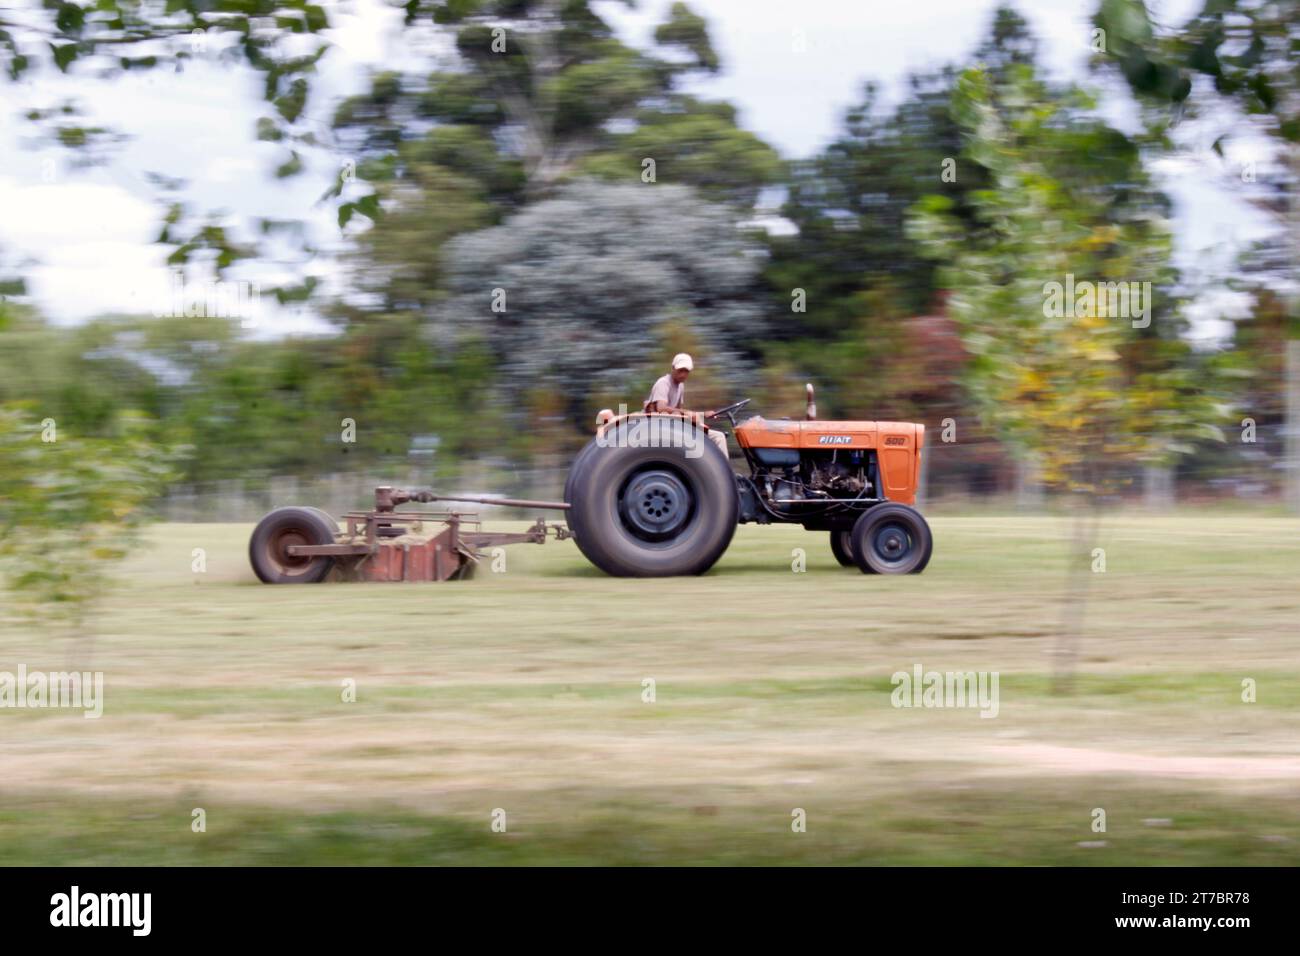 31 dicembre 2012; Buenos Aires, Argentina. Un lavoratore sul campo che taglia l'erba con un vecchio trattore Fiat. Foto Stock